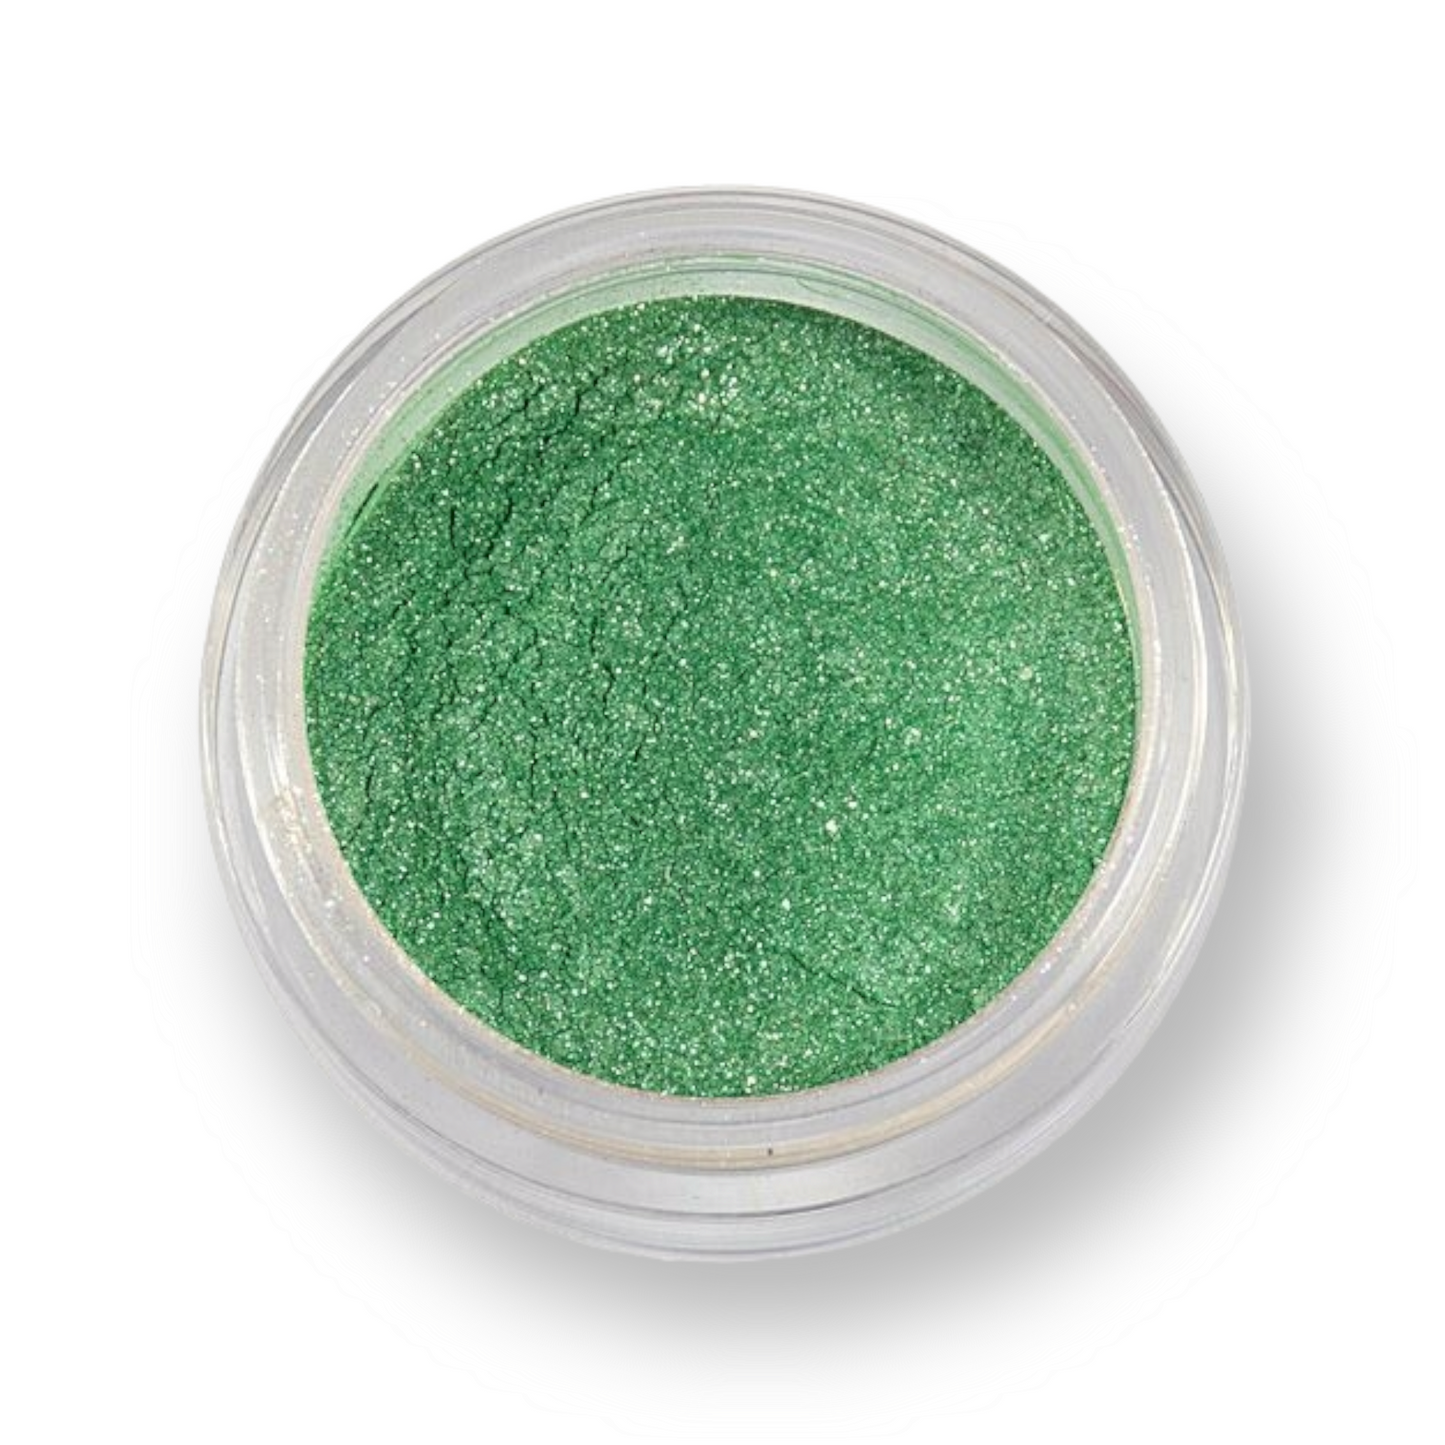 GRIMAS Sparkling Powder bioglitter 740, Gorgeous Green